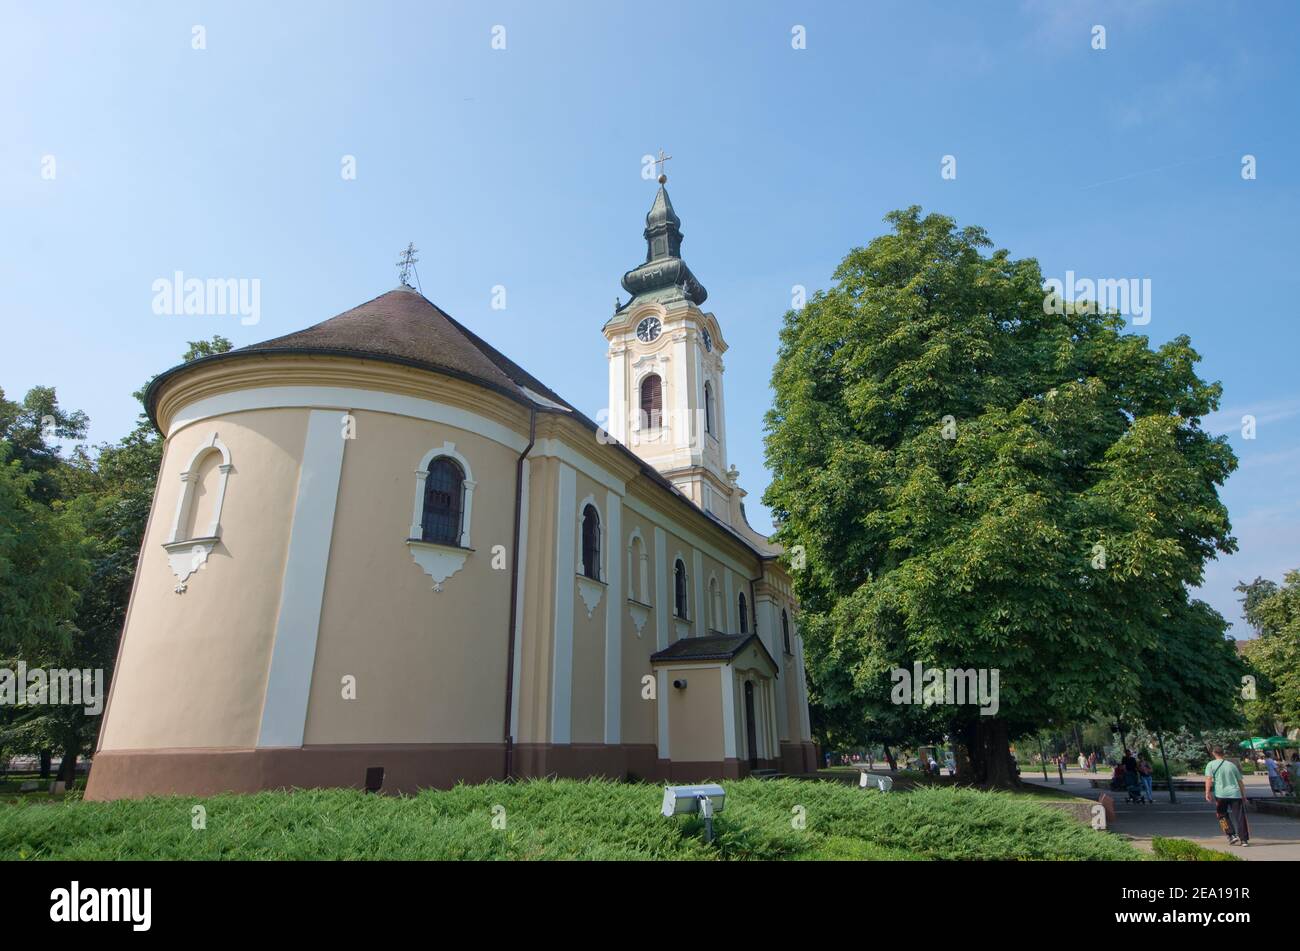 Saint Nicholas Orthodox Church in Kikinda, Serbia Stock Photo